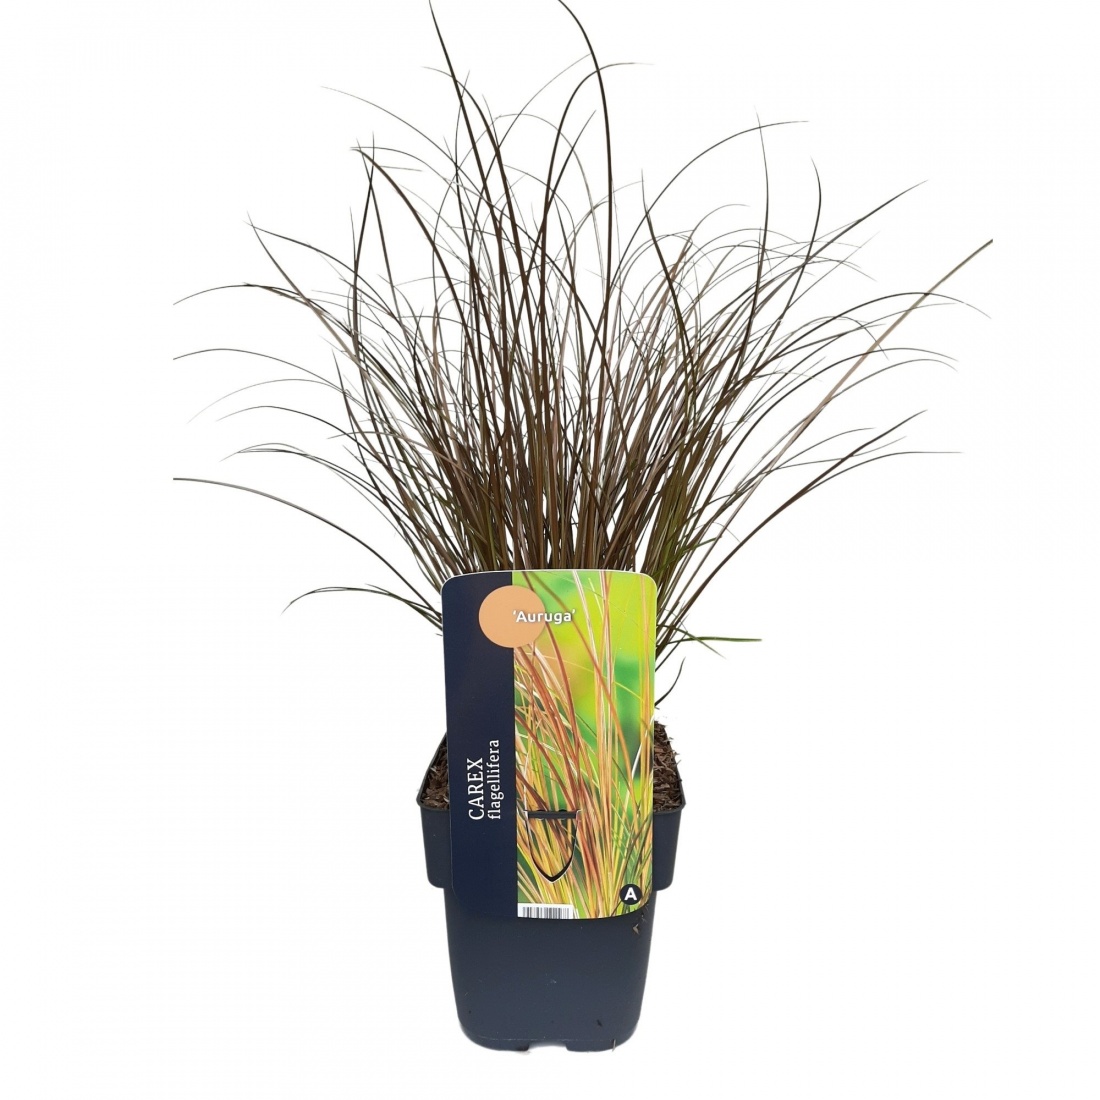 Carex flagellifera 'Auruga' C2 40+